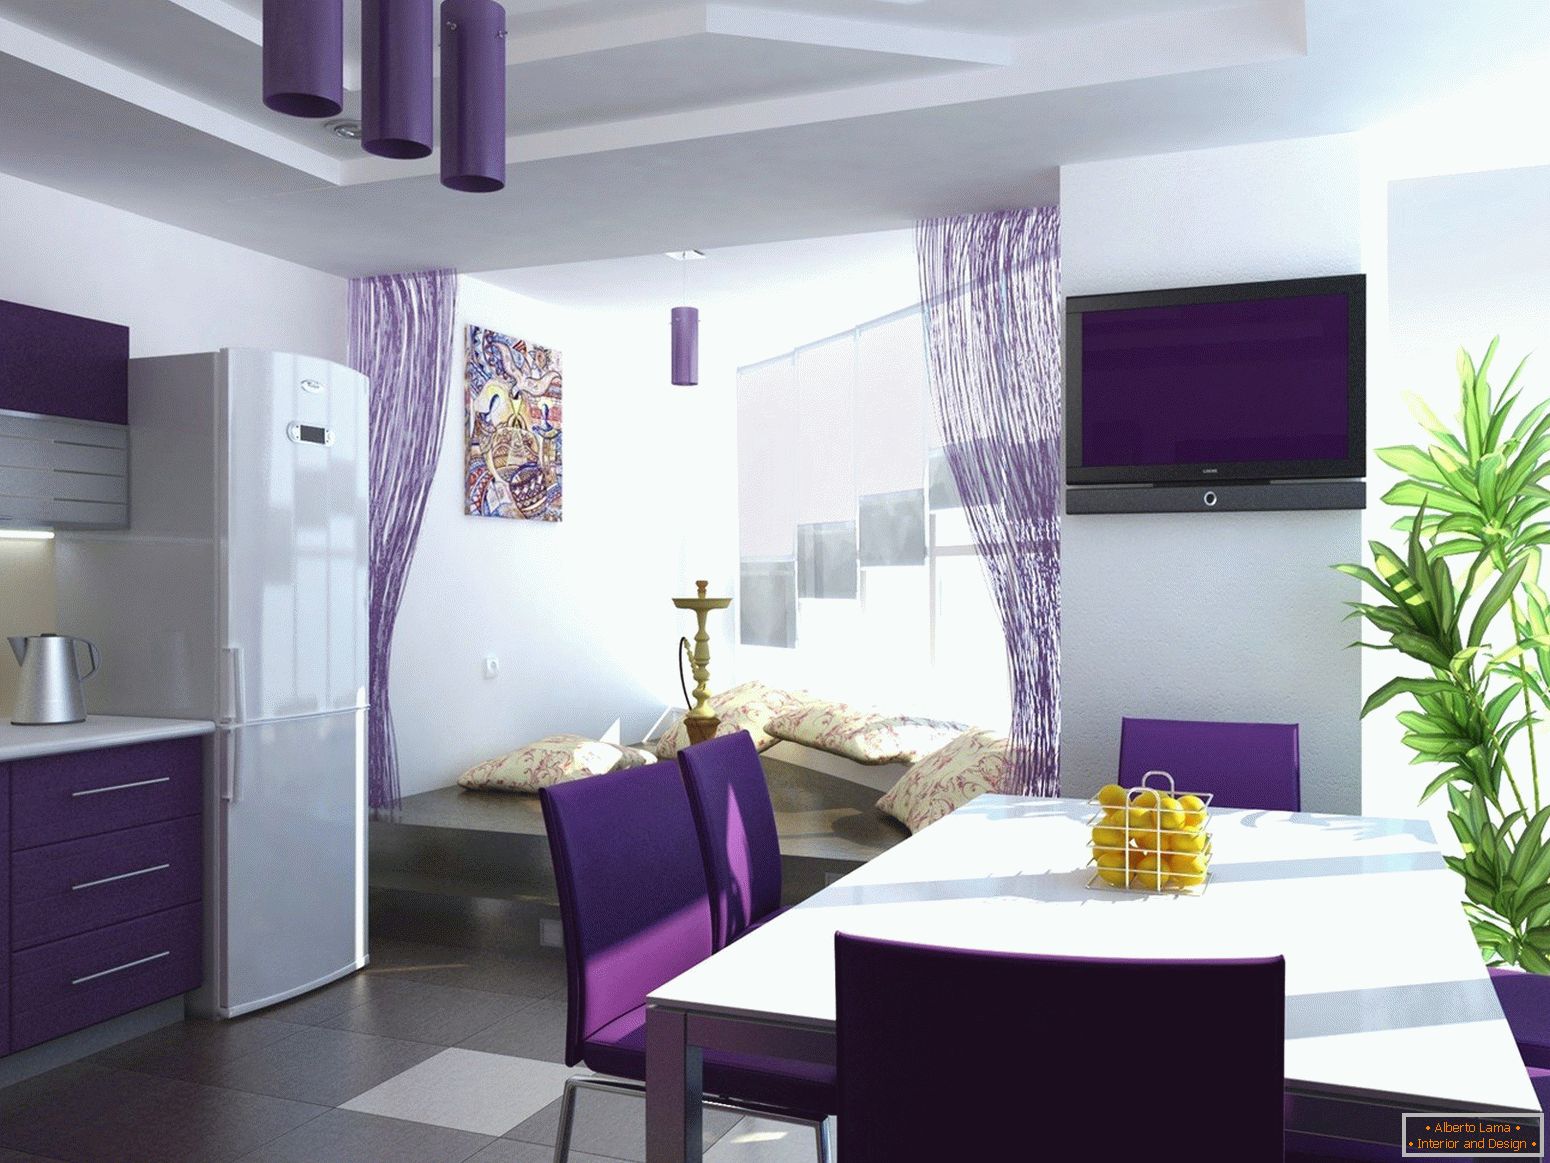 Fioletowy kolor we wnętrzu kuchni